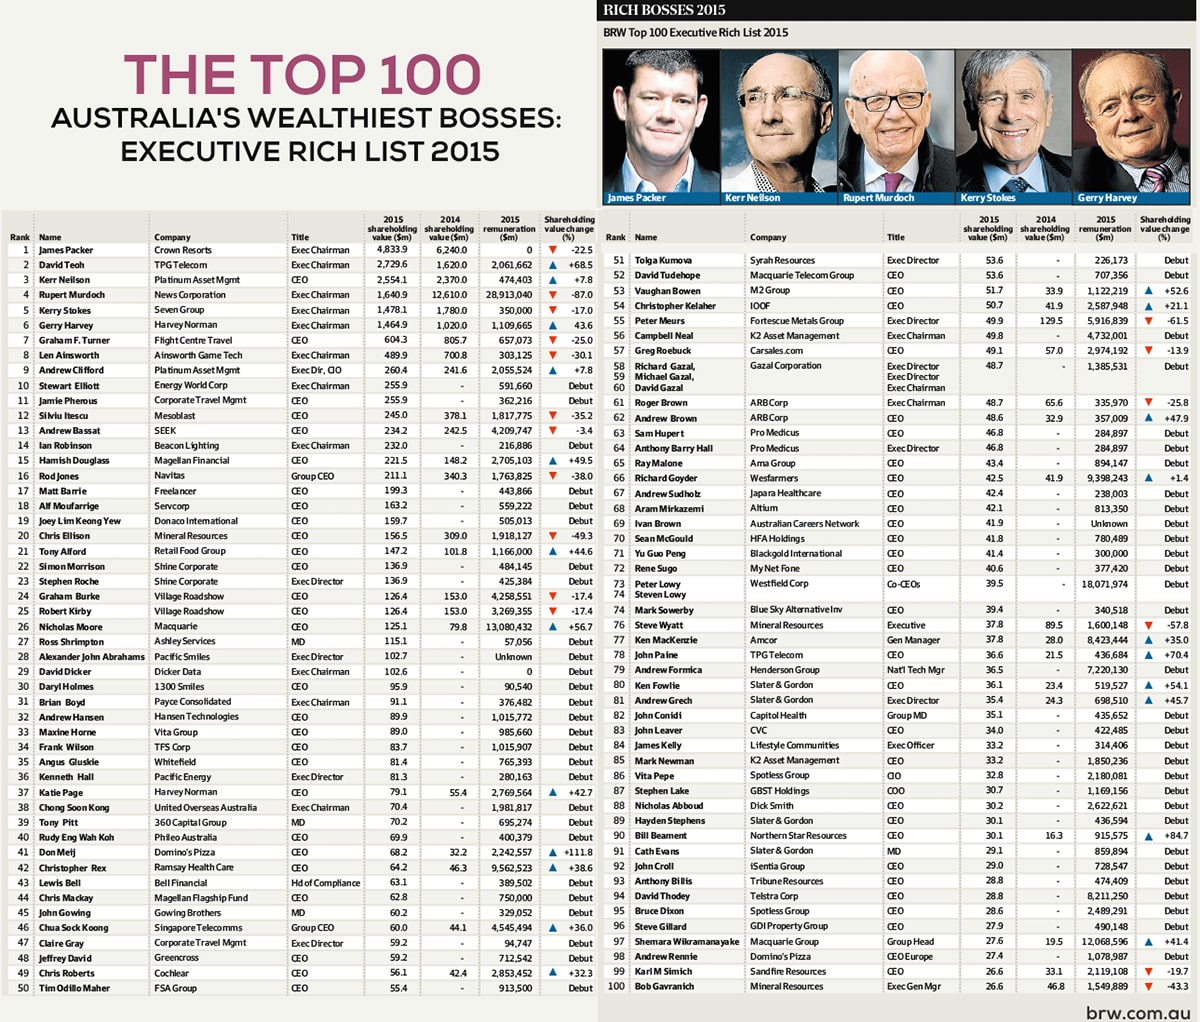 Top 20 Australias Wealthiest Bosses Executive Rich List 2015